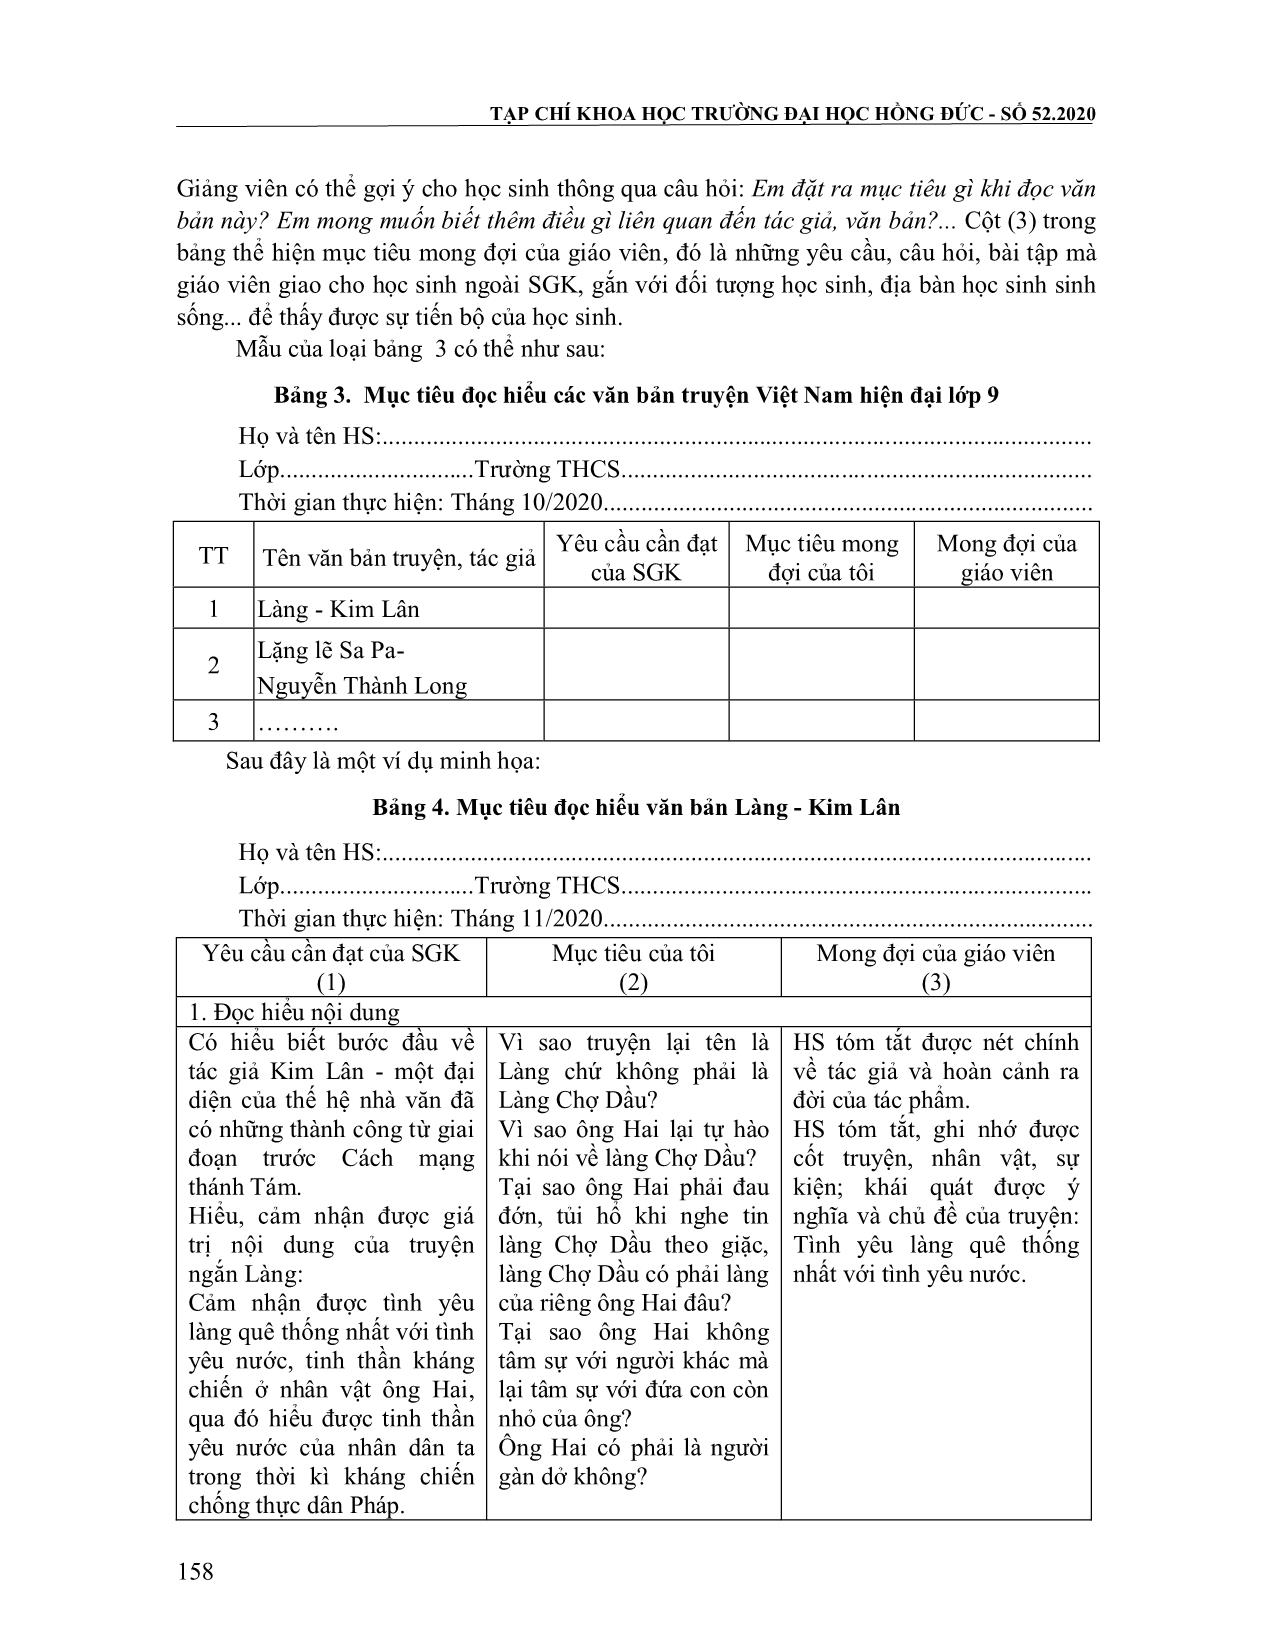 Hướng dẫn học sinh xây dựng và sử dụng hồ sơ mục tiêu trong dạy học đọc hiểu văn bản truyện Việt Nam hiện đại ở lớp 9 trang 7